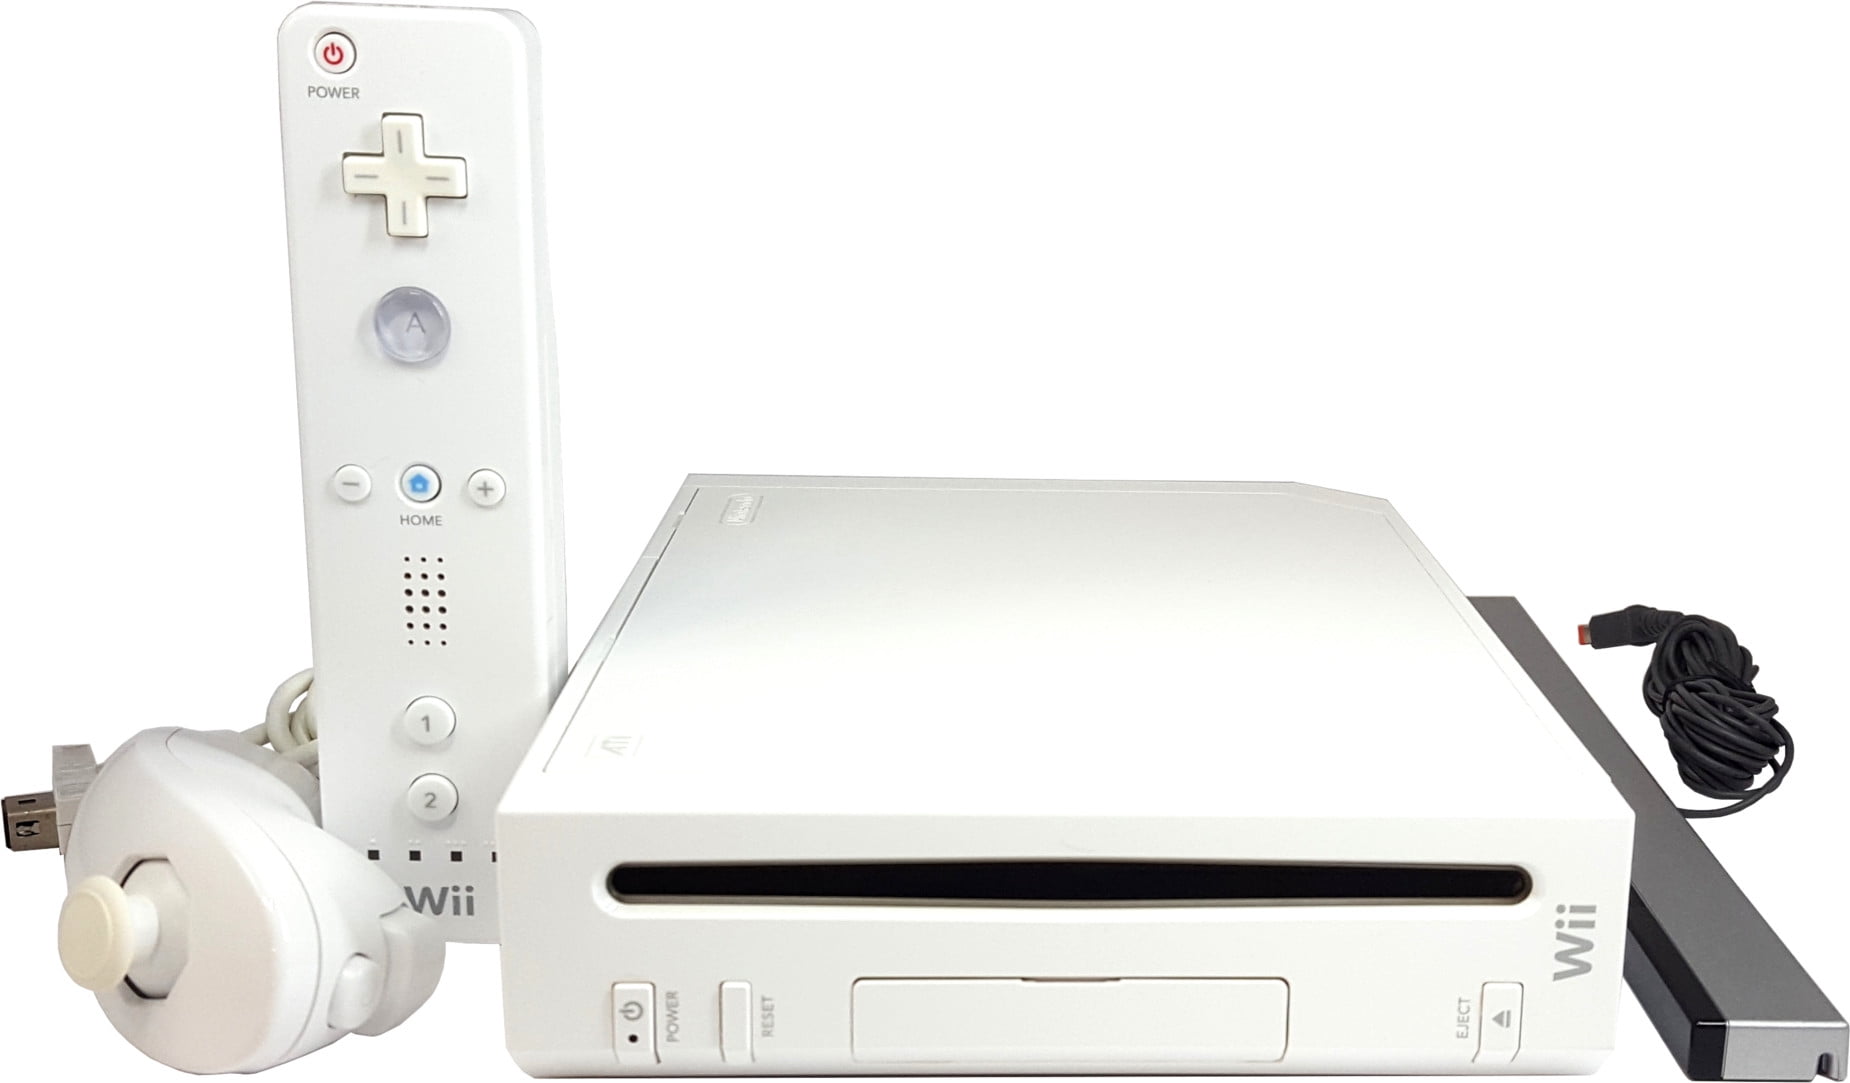 Consola de videojuegos Nintendo Wii restaurada Costa Rica